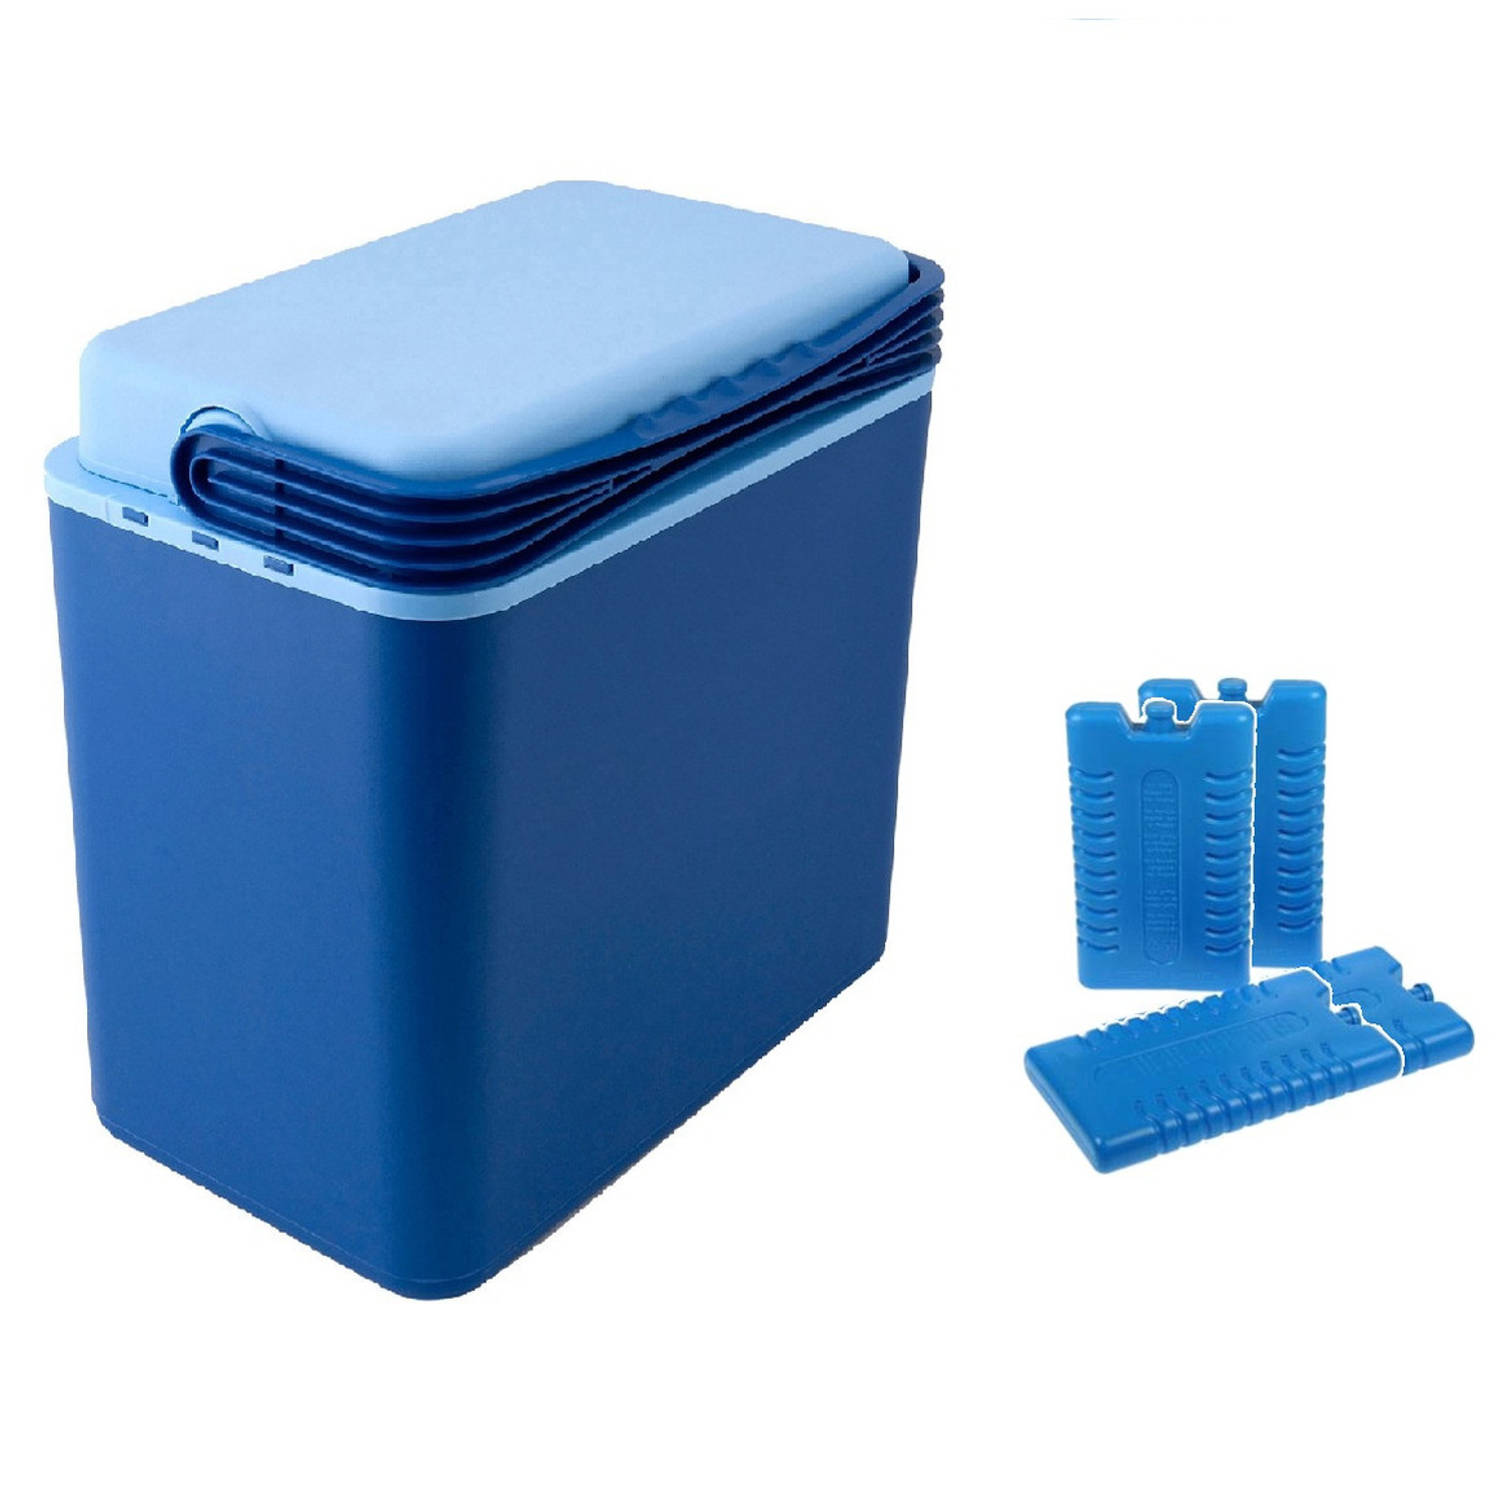 Koelbox donkerblauw 24 liter 39 x 25 x 40 cm incl. 4 koelelementen - Koelboxen